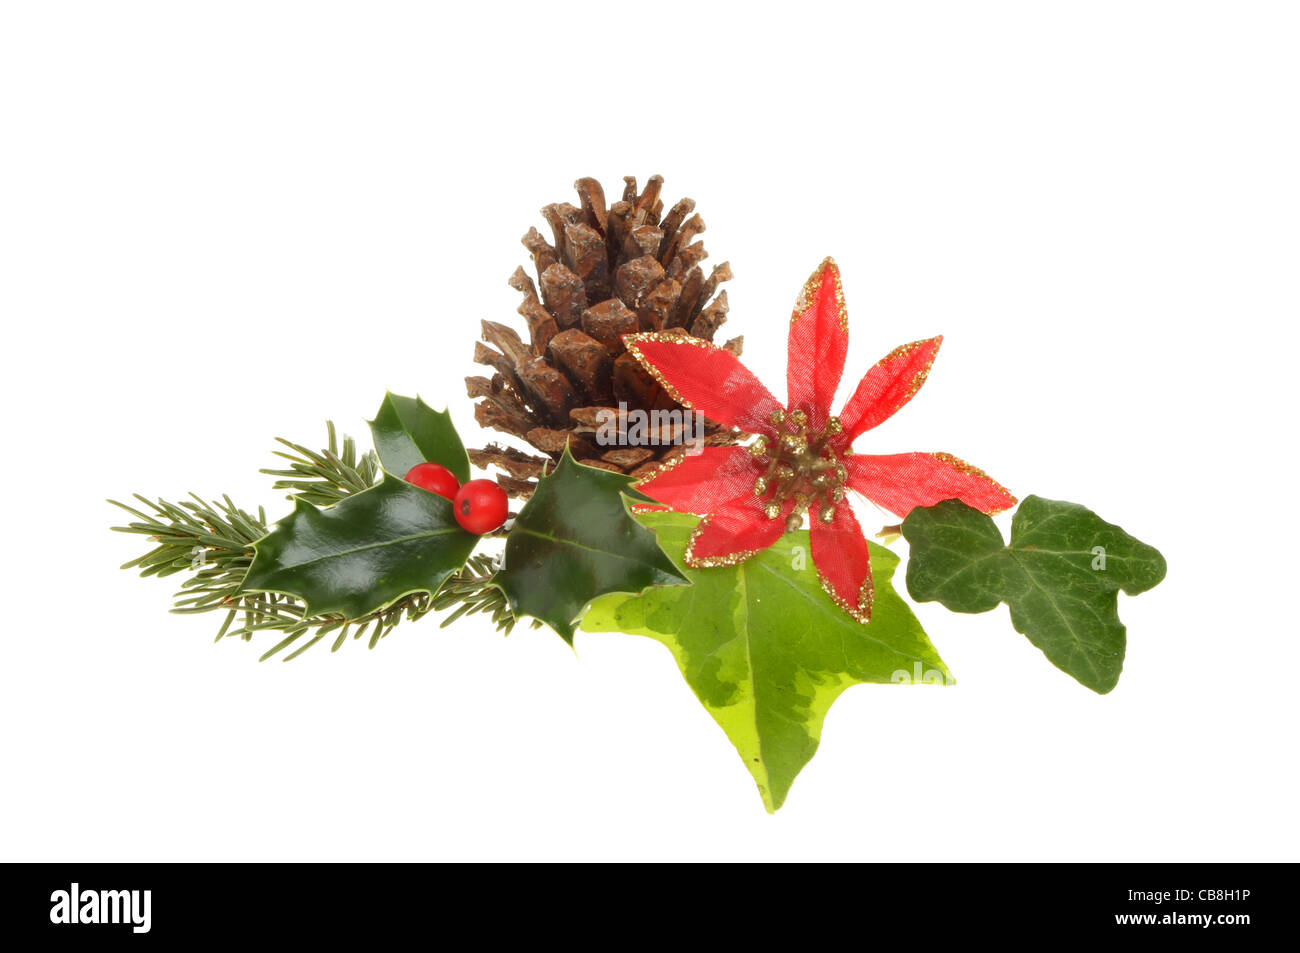 El follaje de temporada de Navidad, el acebo, hiedra, agujas de pino, pinecone artificial y una flor roja y dorada aislado en blanco Foto de stock